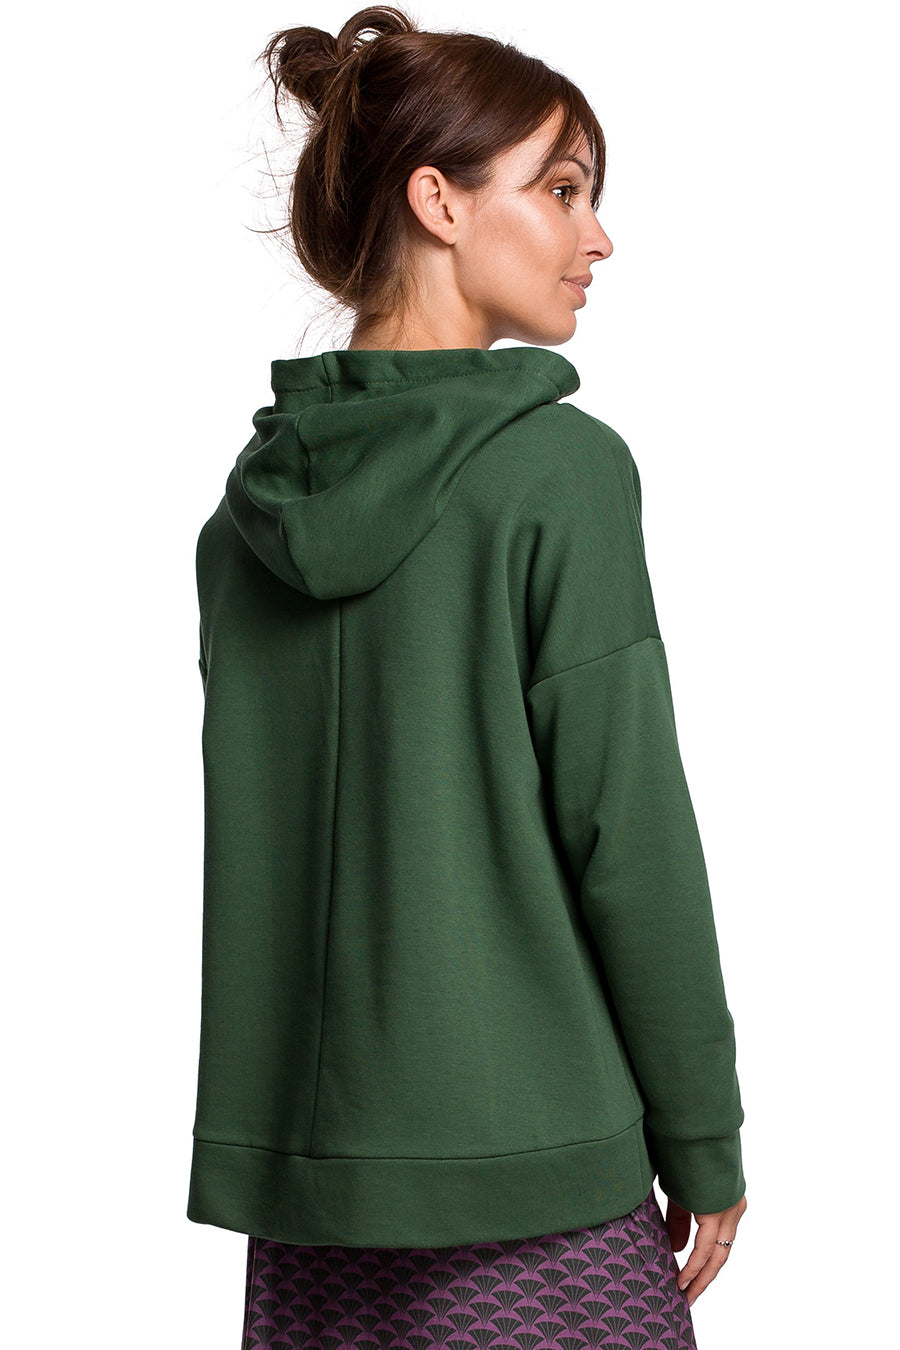 Γυναικείο φούτερ με κουκούλα Zeynep, Πράσινο 4